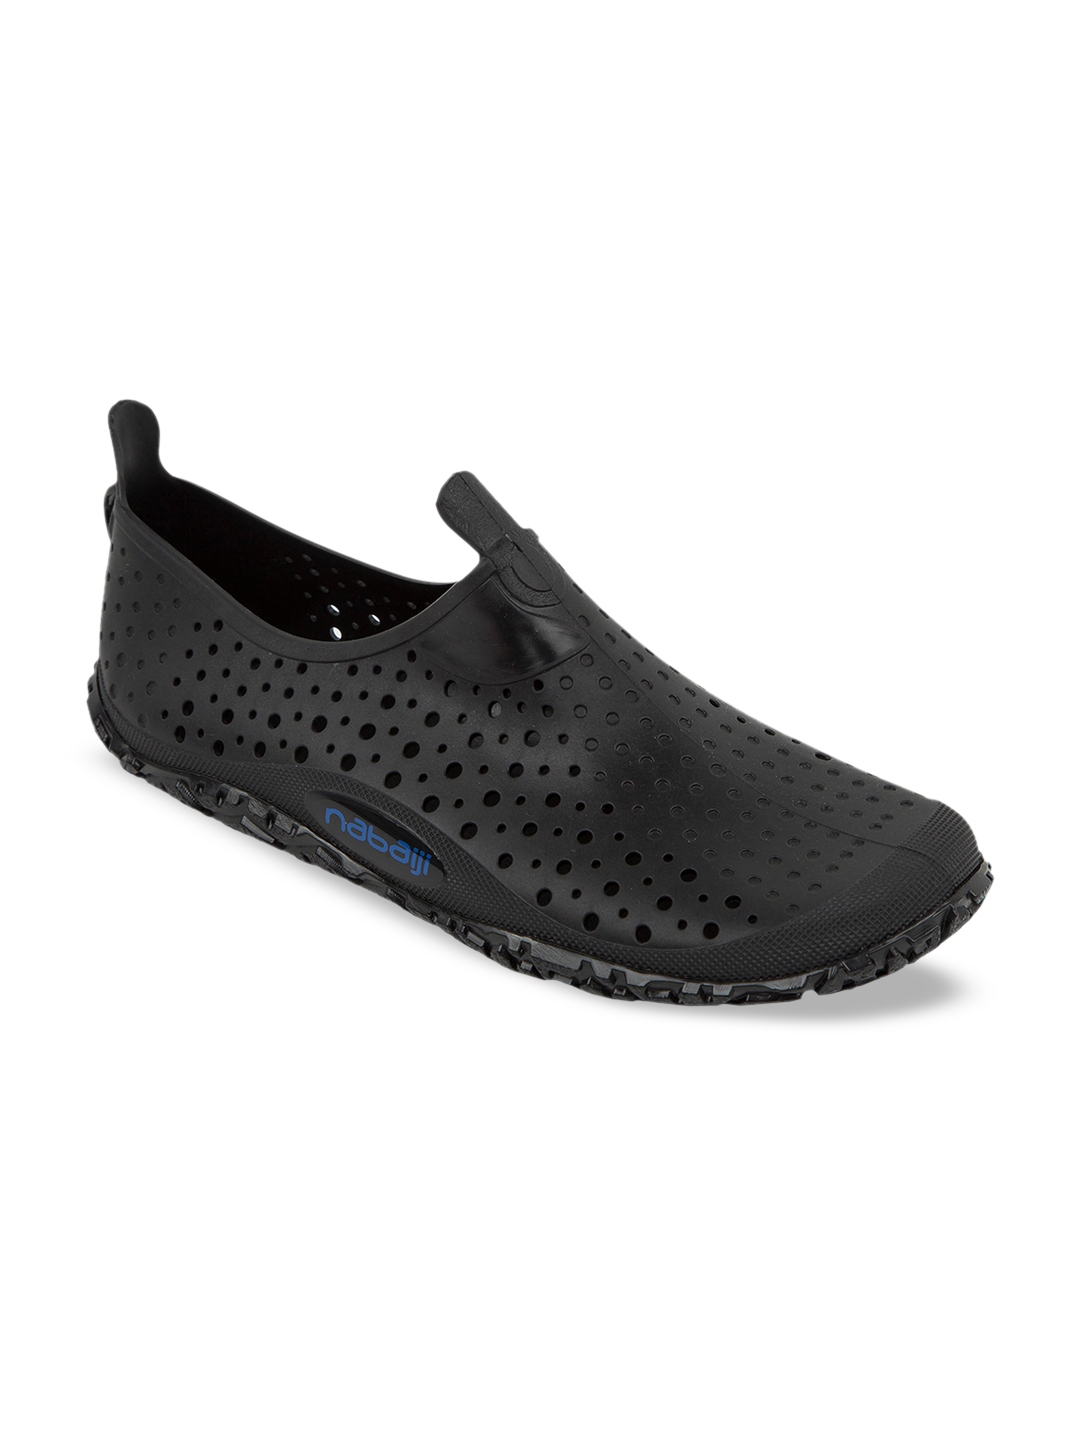 Buy Nabaiji By Decathlon Unisex Black Synthetic Aqua Aerobics Shoes ...